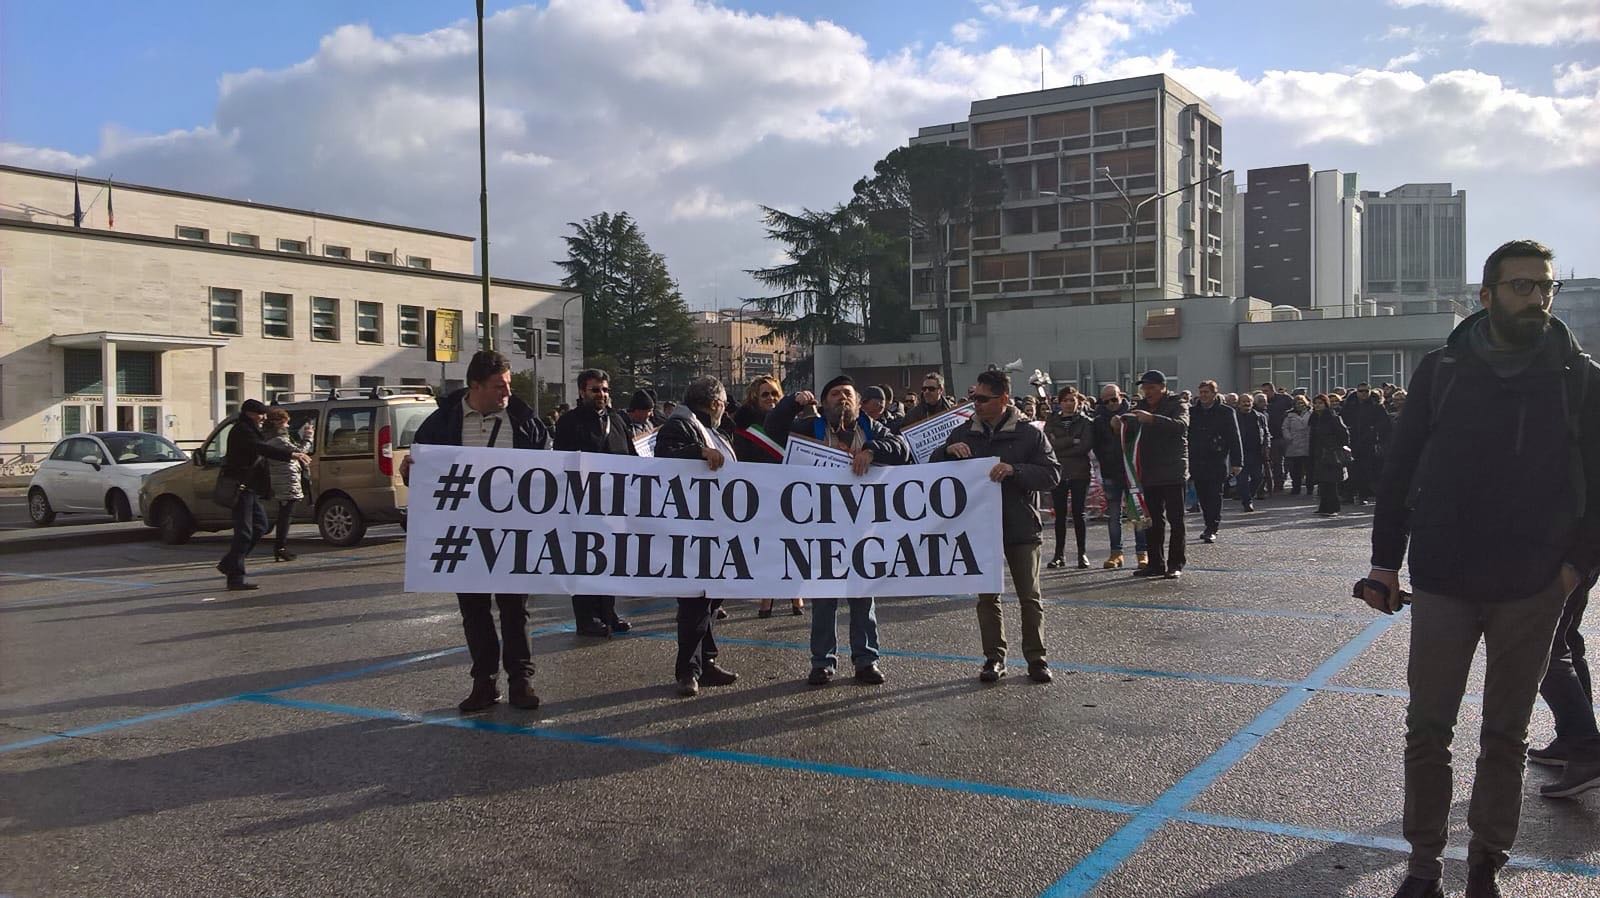 Montefalcone Valfortore| “Viabilità negata” il corteo arriva in Prefettura